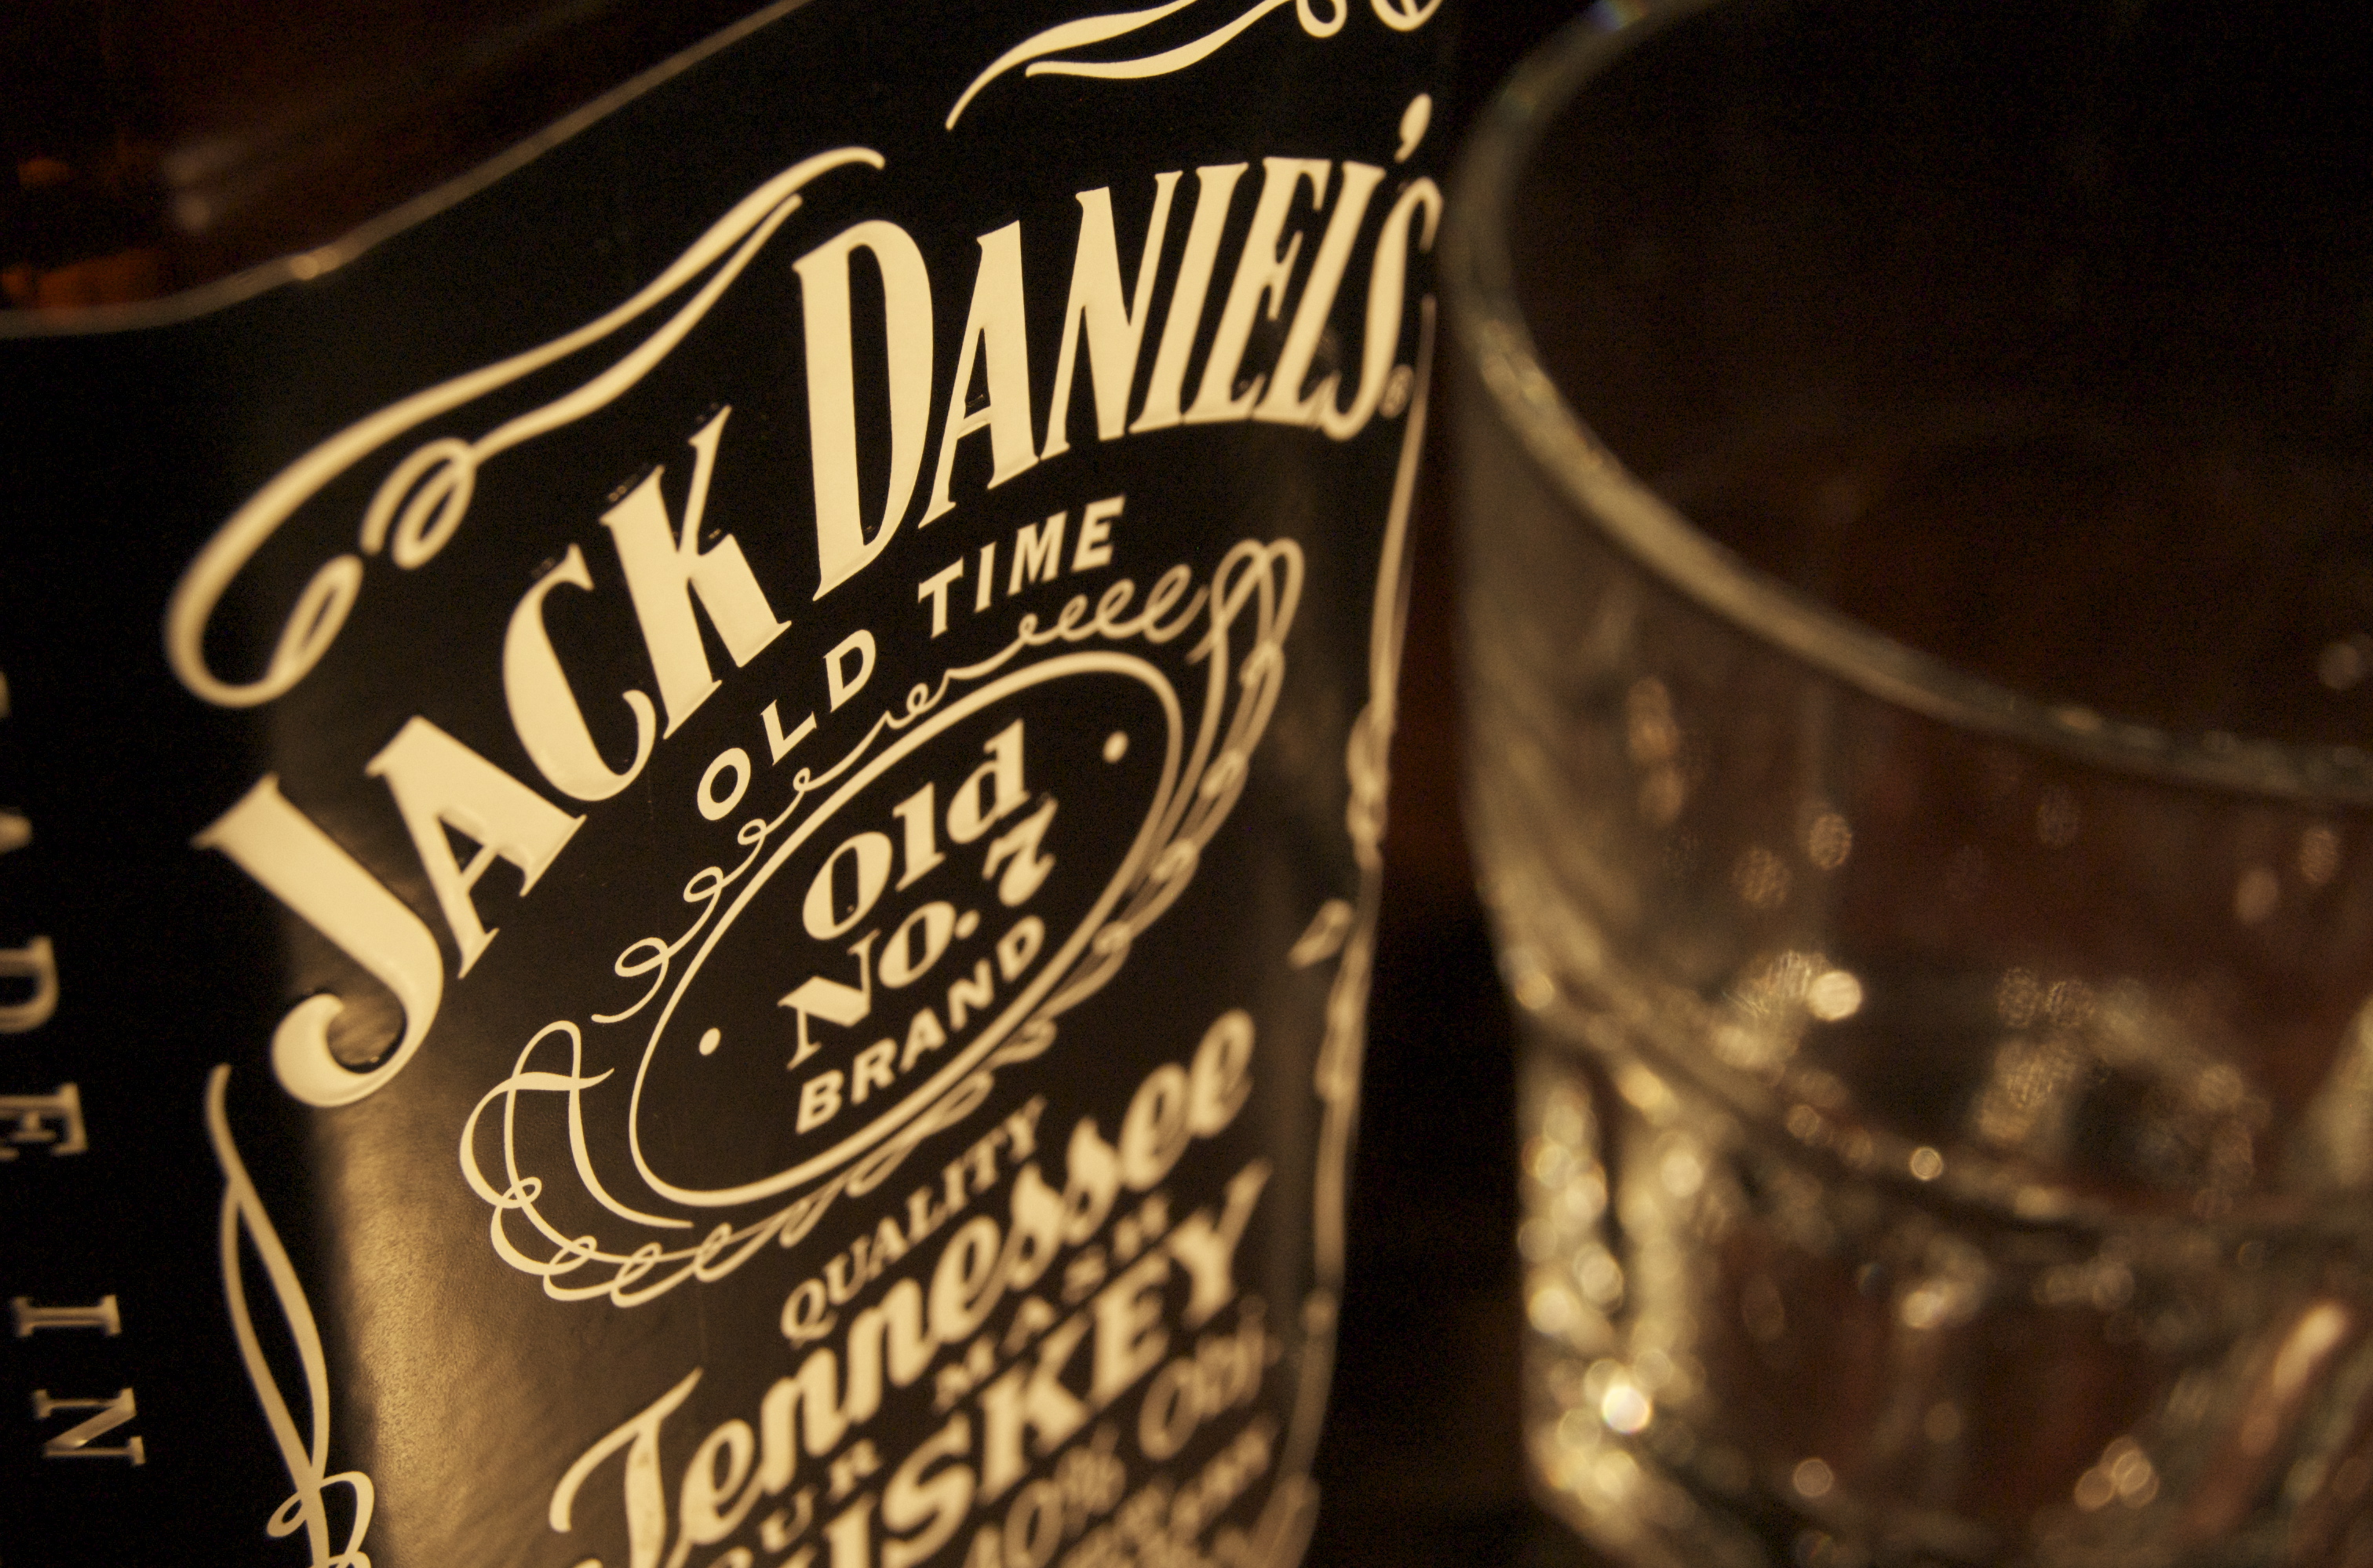 Миндоходов: Контрабандное виски «Chivas Regal», «Jack Daniel's» продавалось в магазинах Duty Free